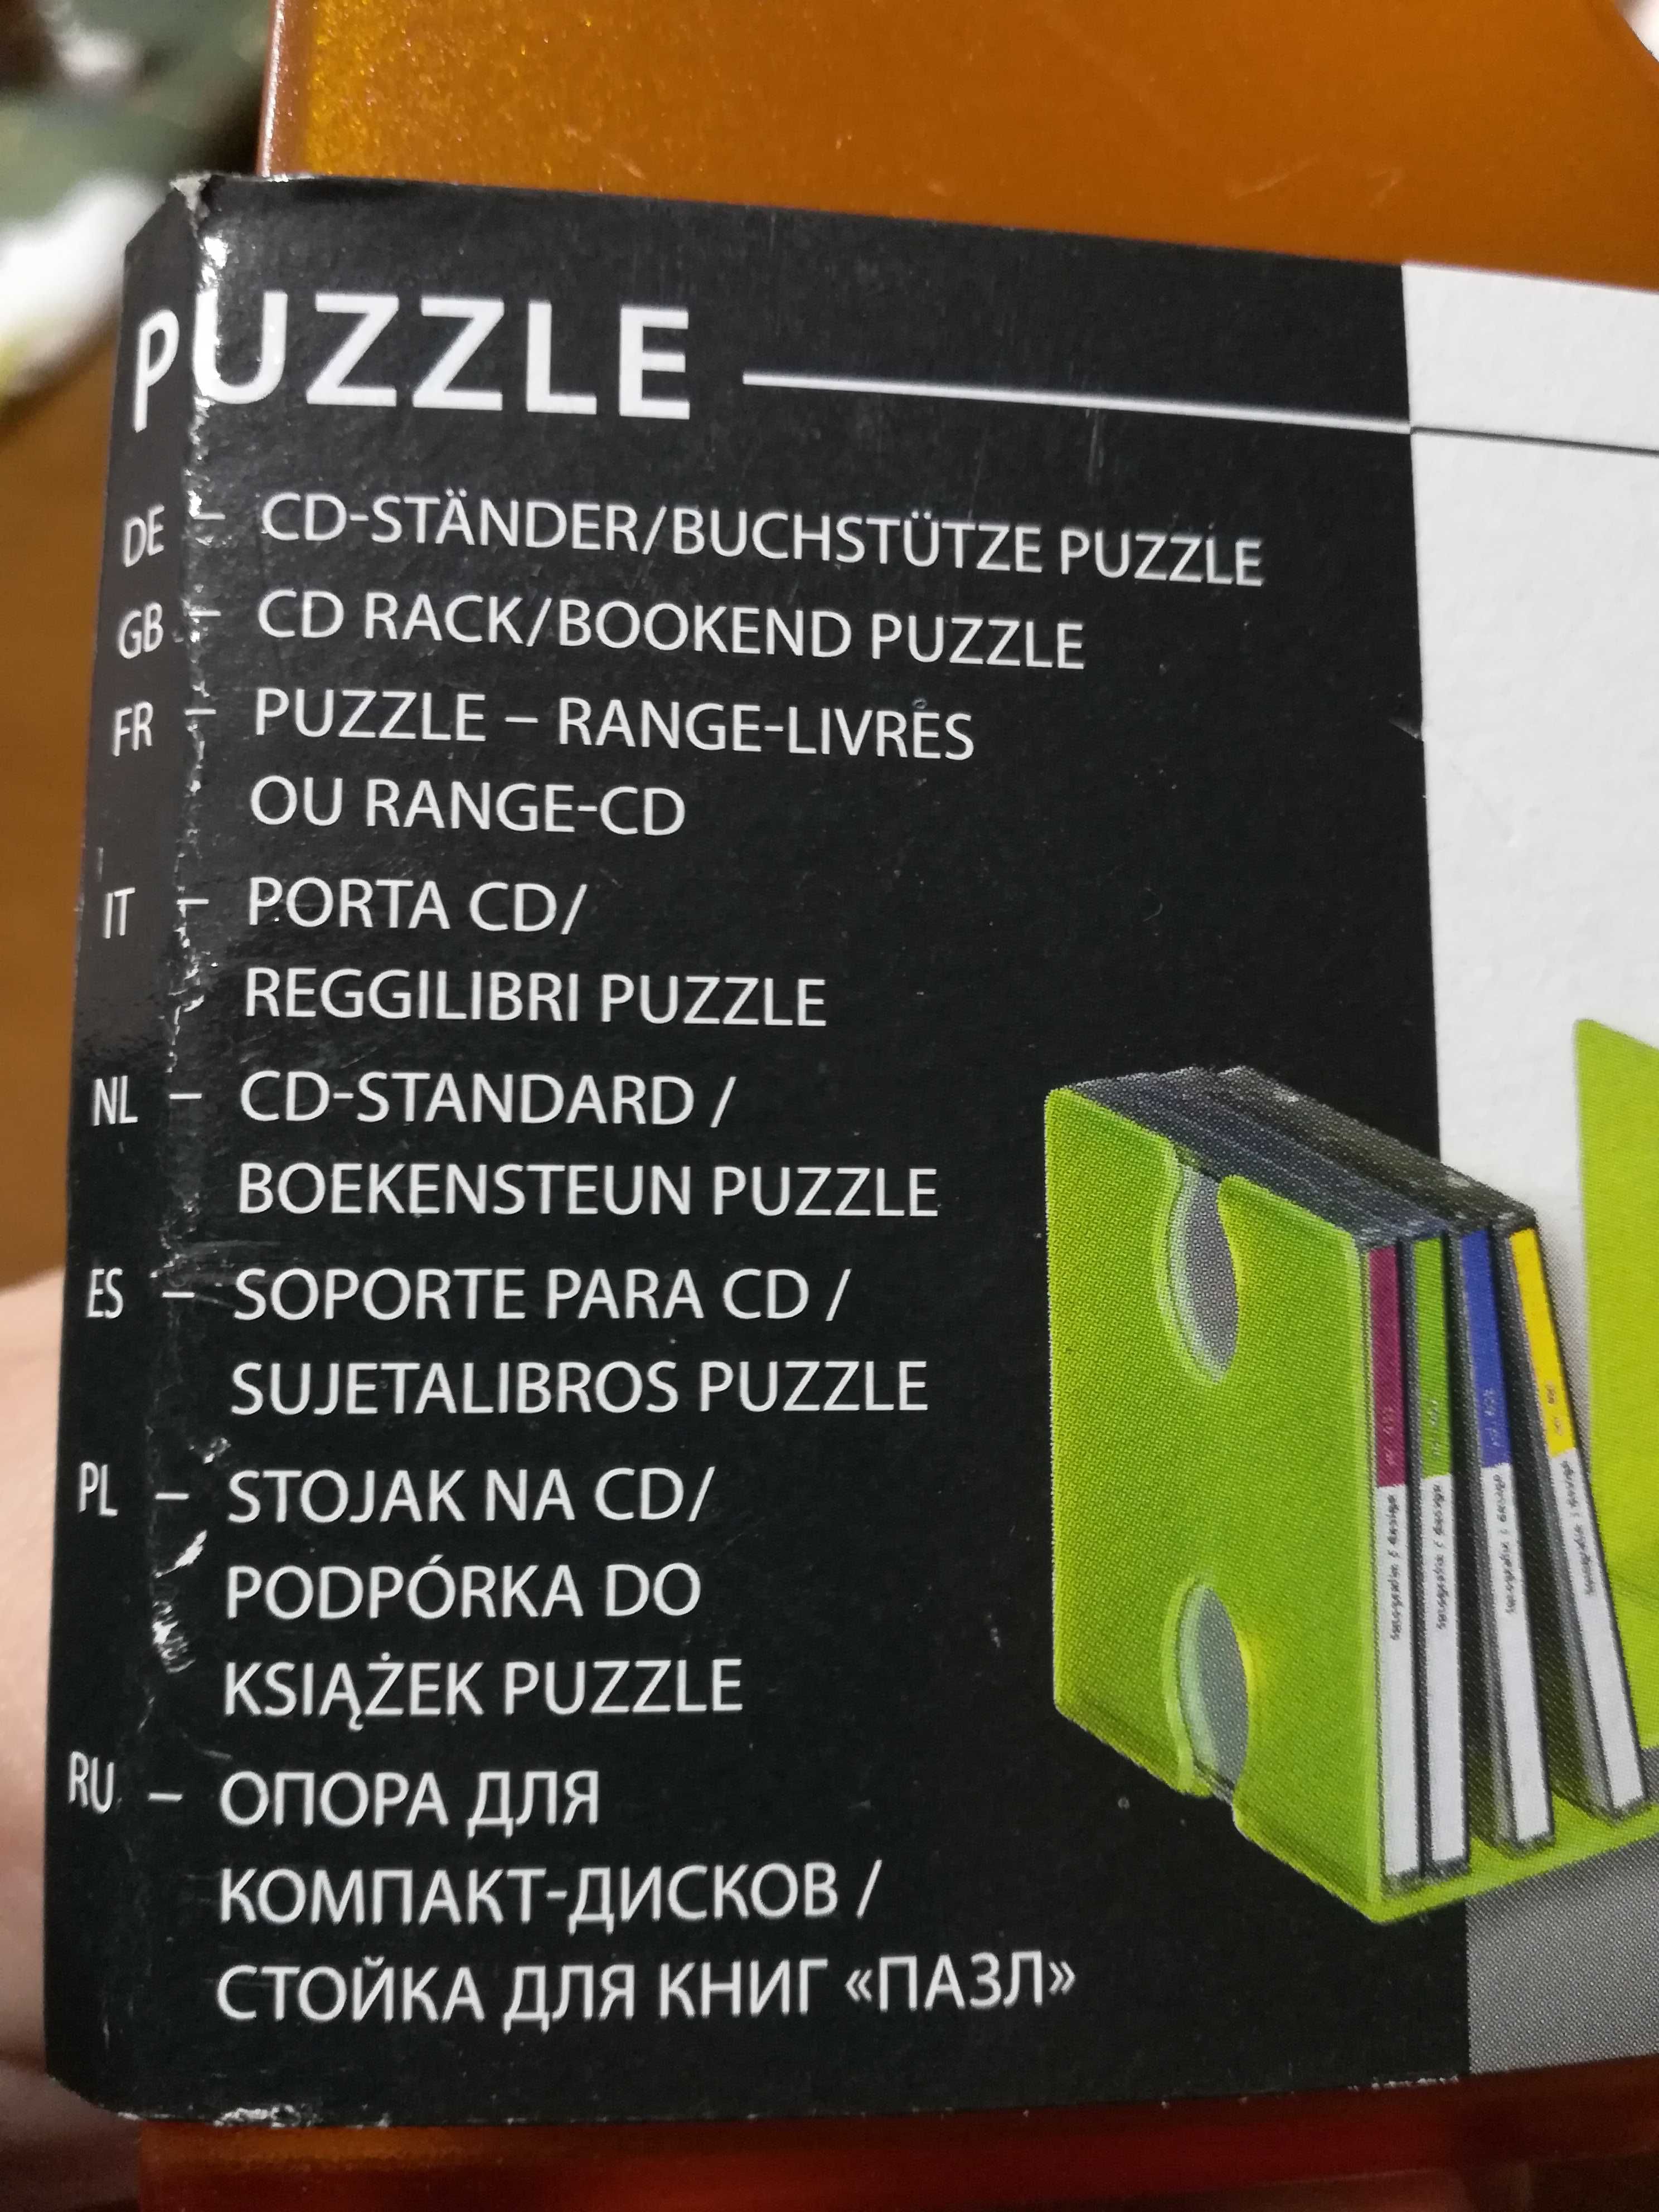 Stojak na CD/Podpórka do książek Puzzle